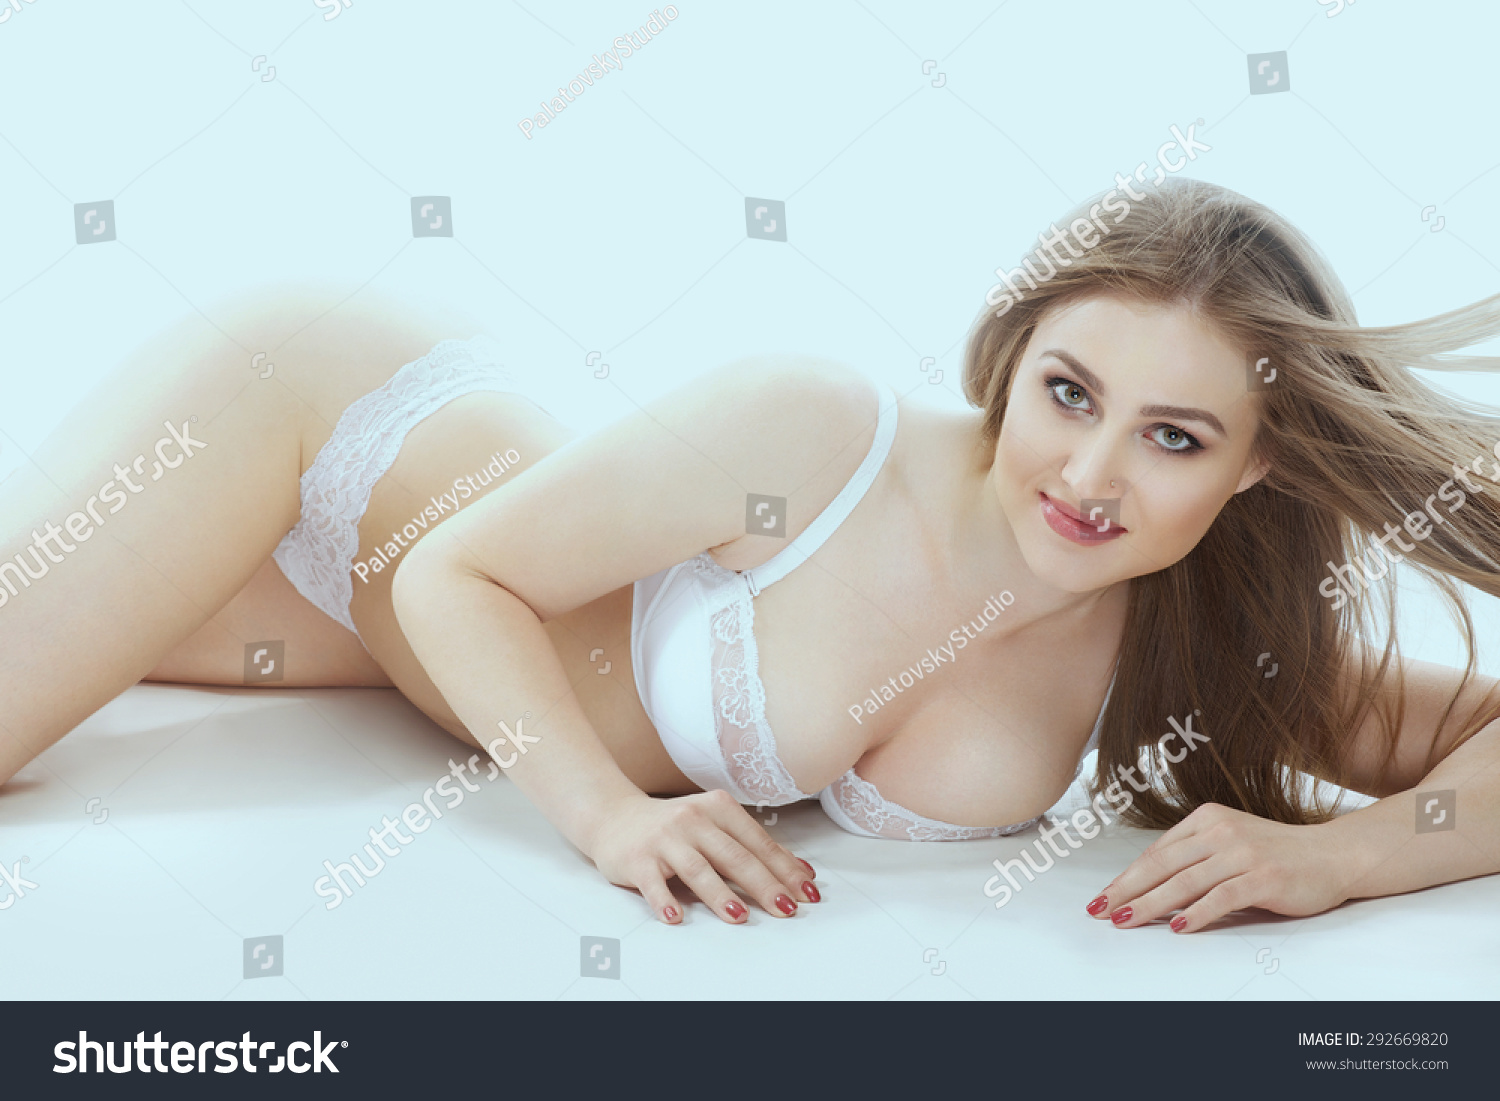 Photos Sexy Girl Russian